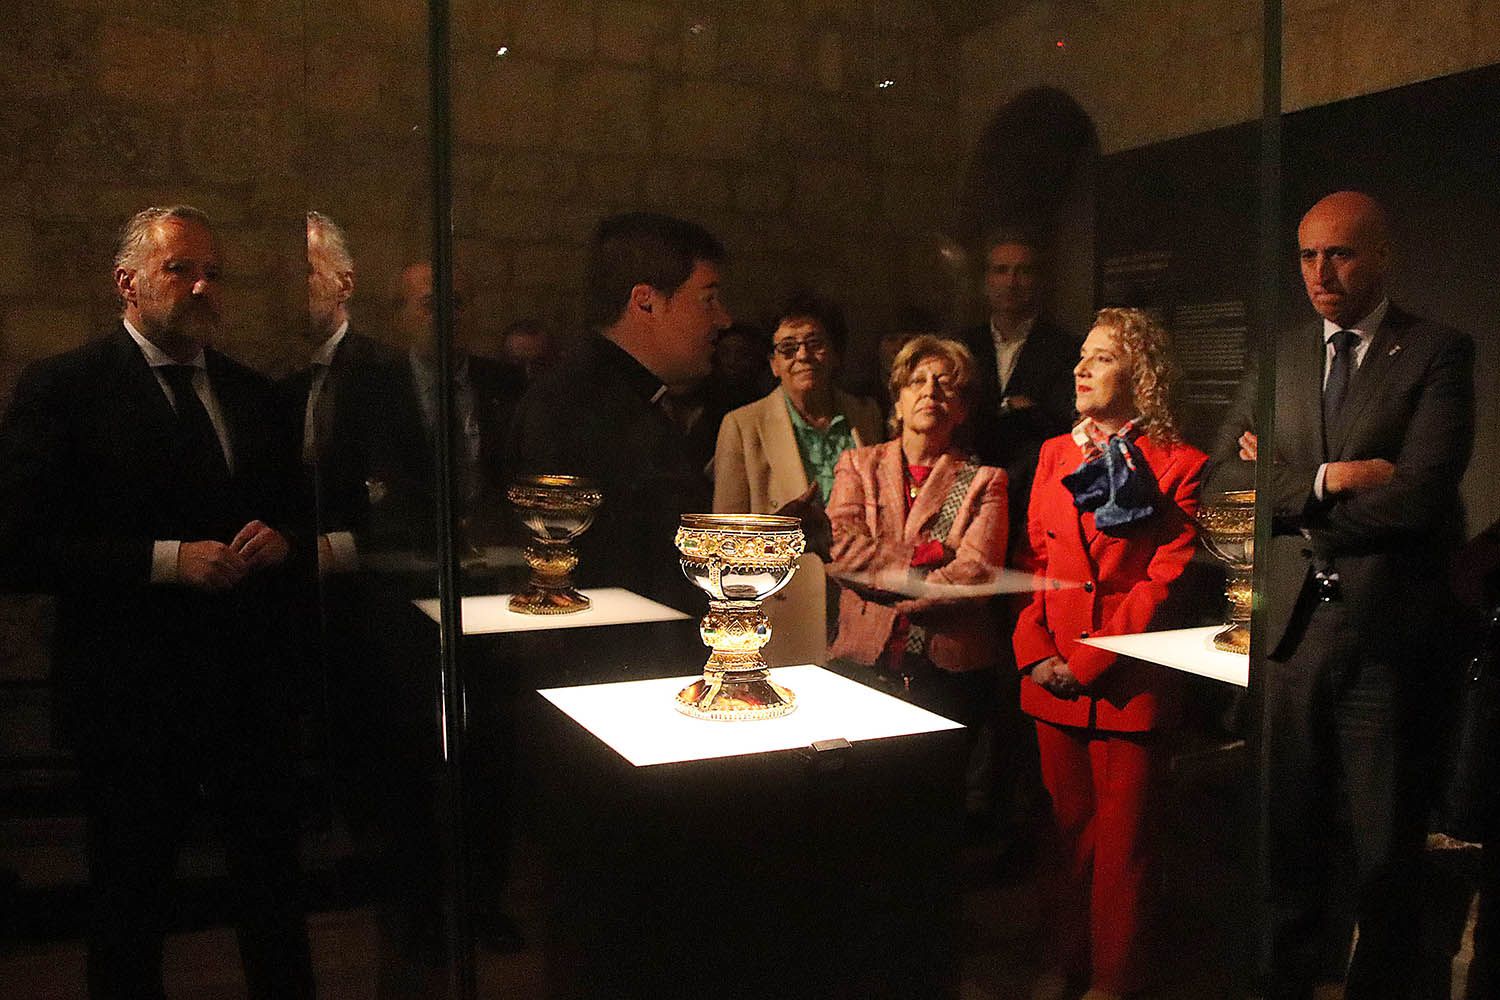 Inauguración de la reforma integral del Museo de San Isidoro de León